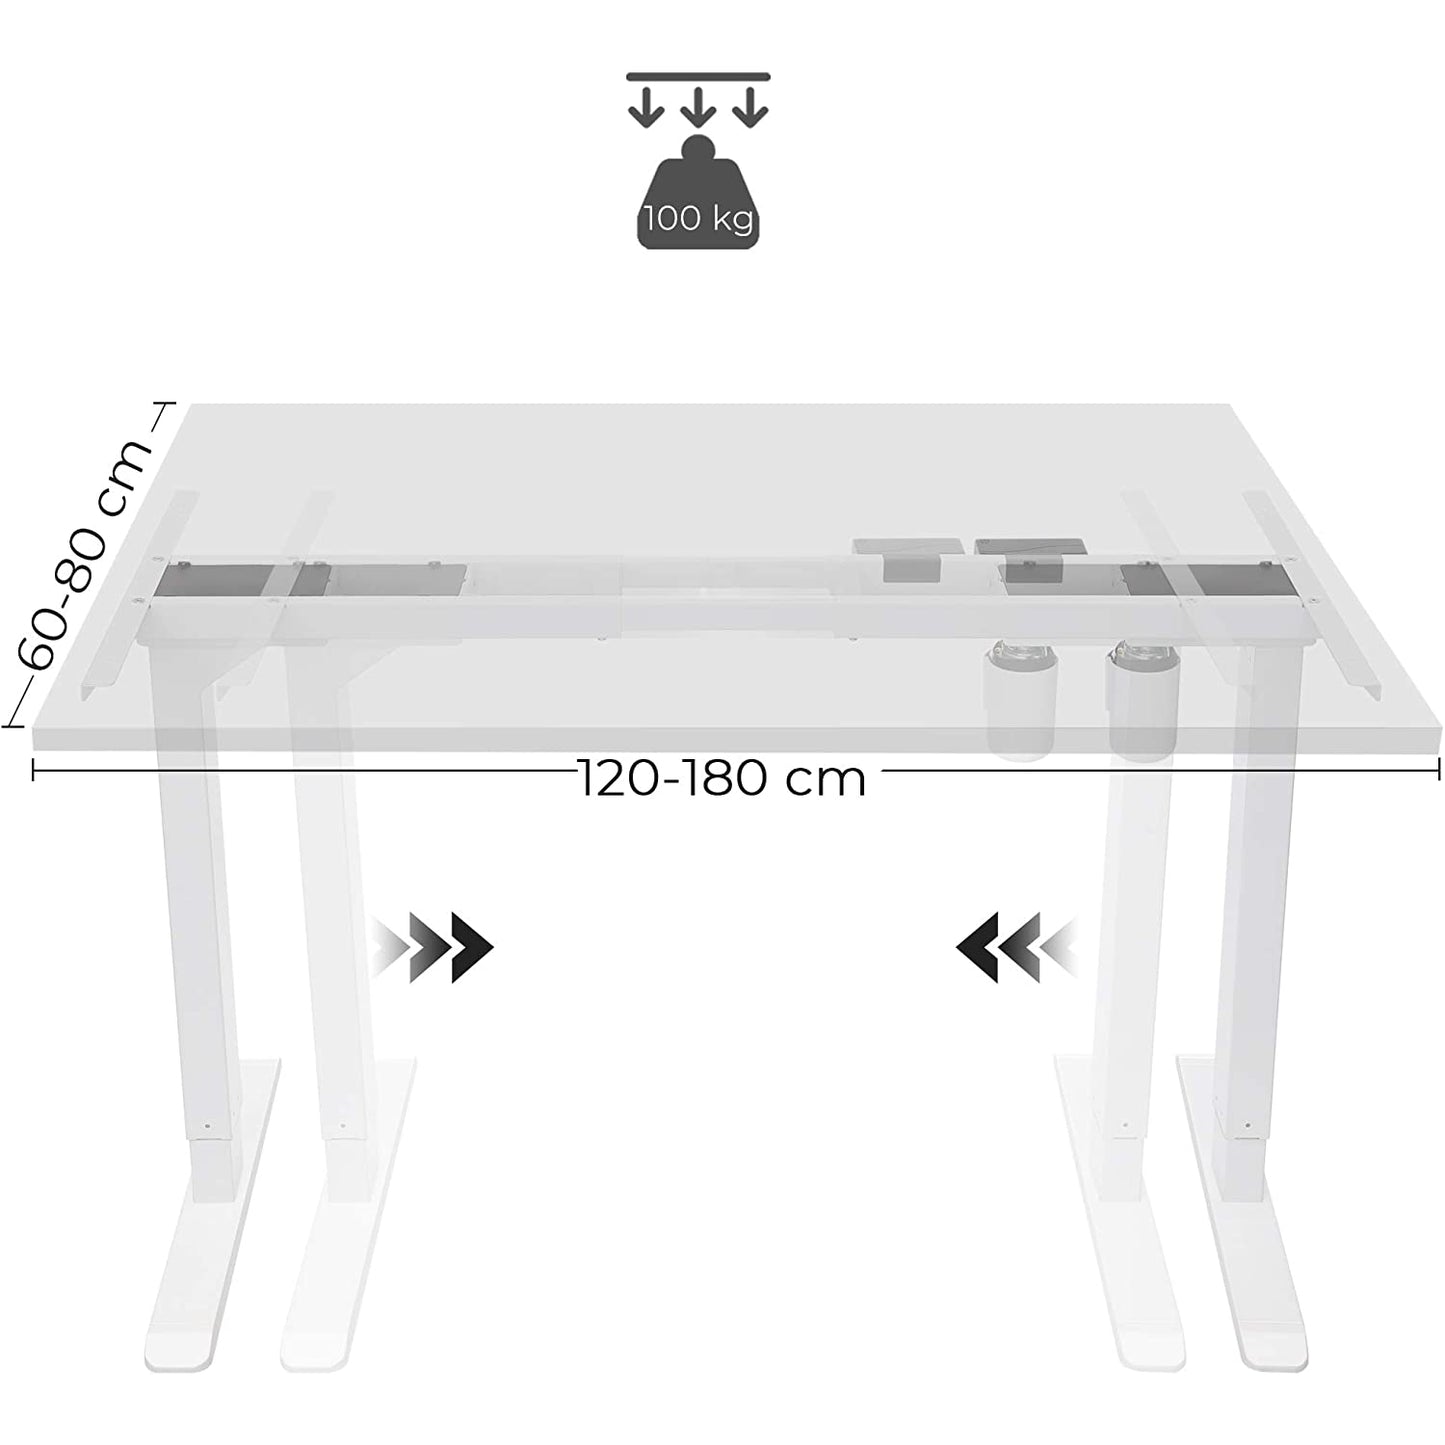 Support de bureau Okemos de Nancy - Avec moteur - Hauteur réglable - Sans plateau de table - Cadre - Longueur réglable - Acier - Blanc - (115-147) x 60 x (71-112) cm